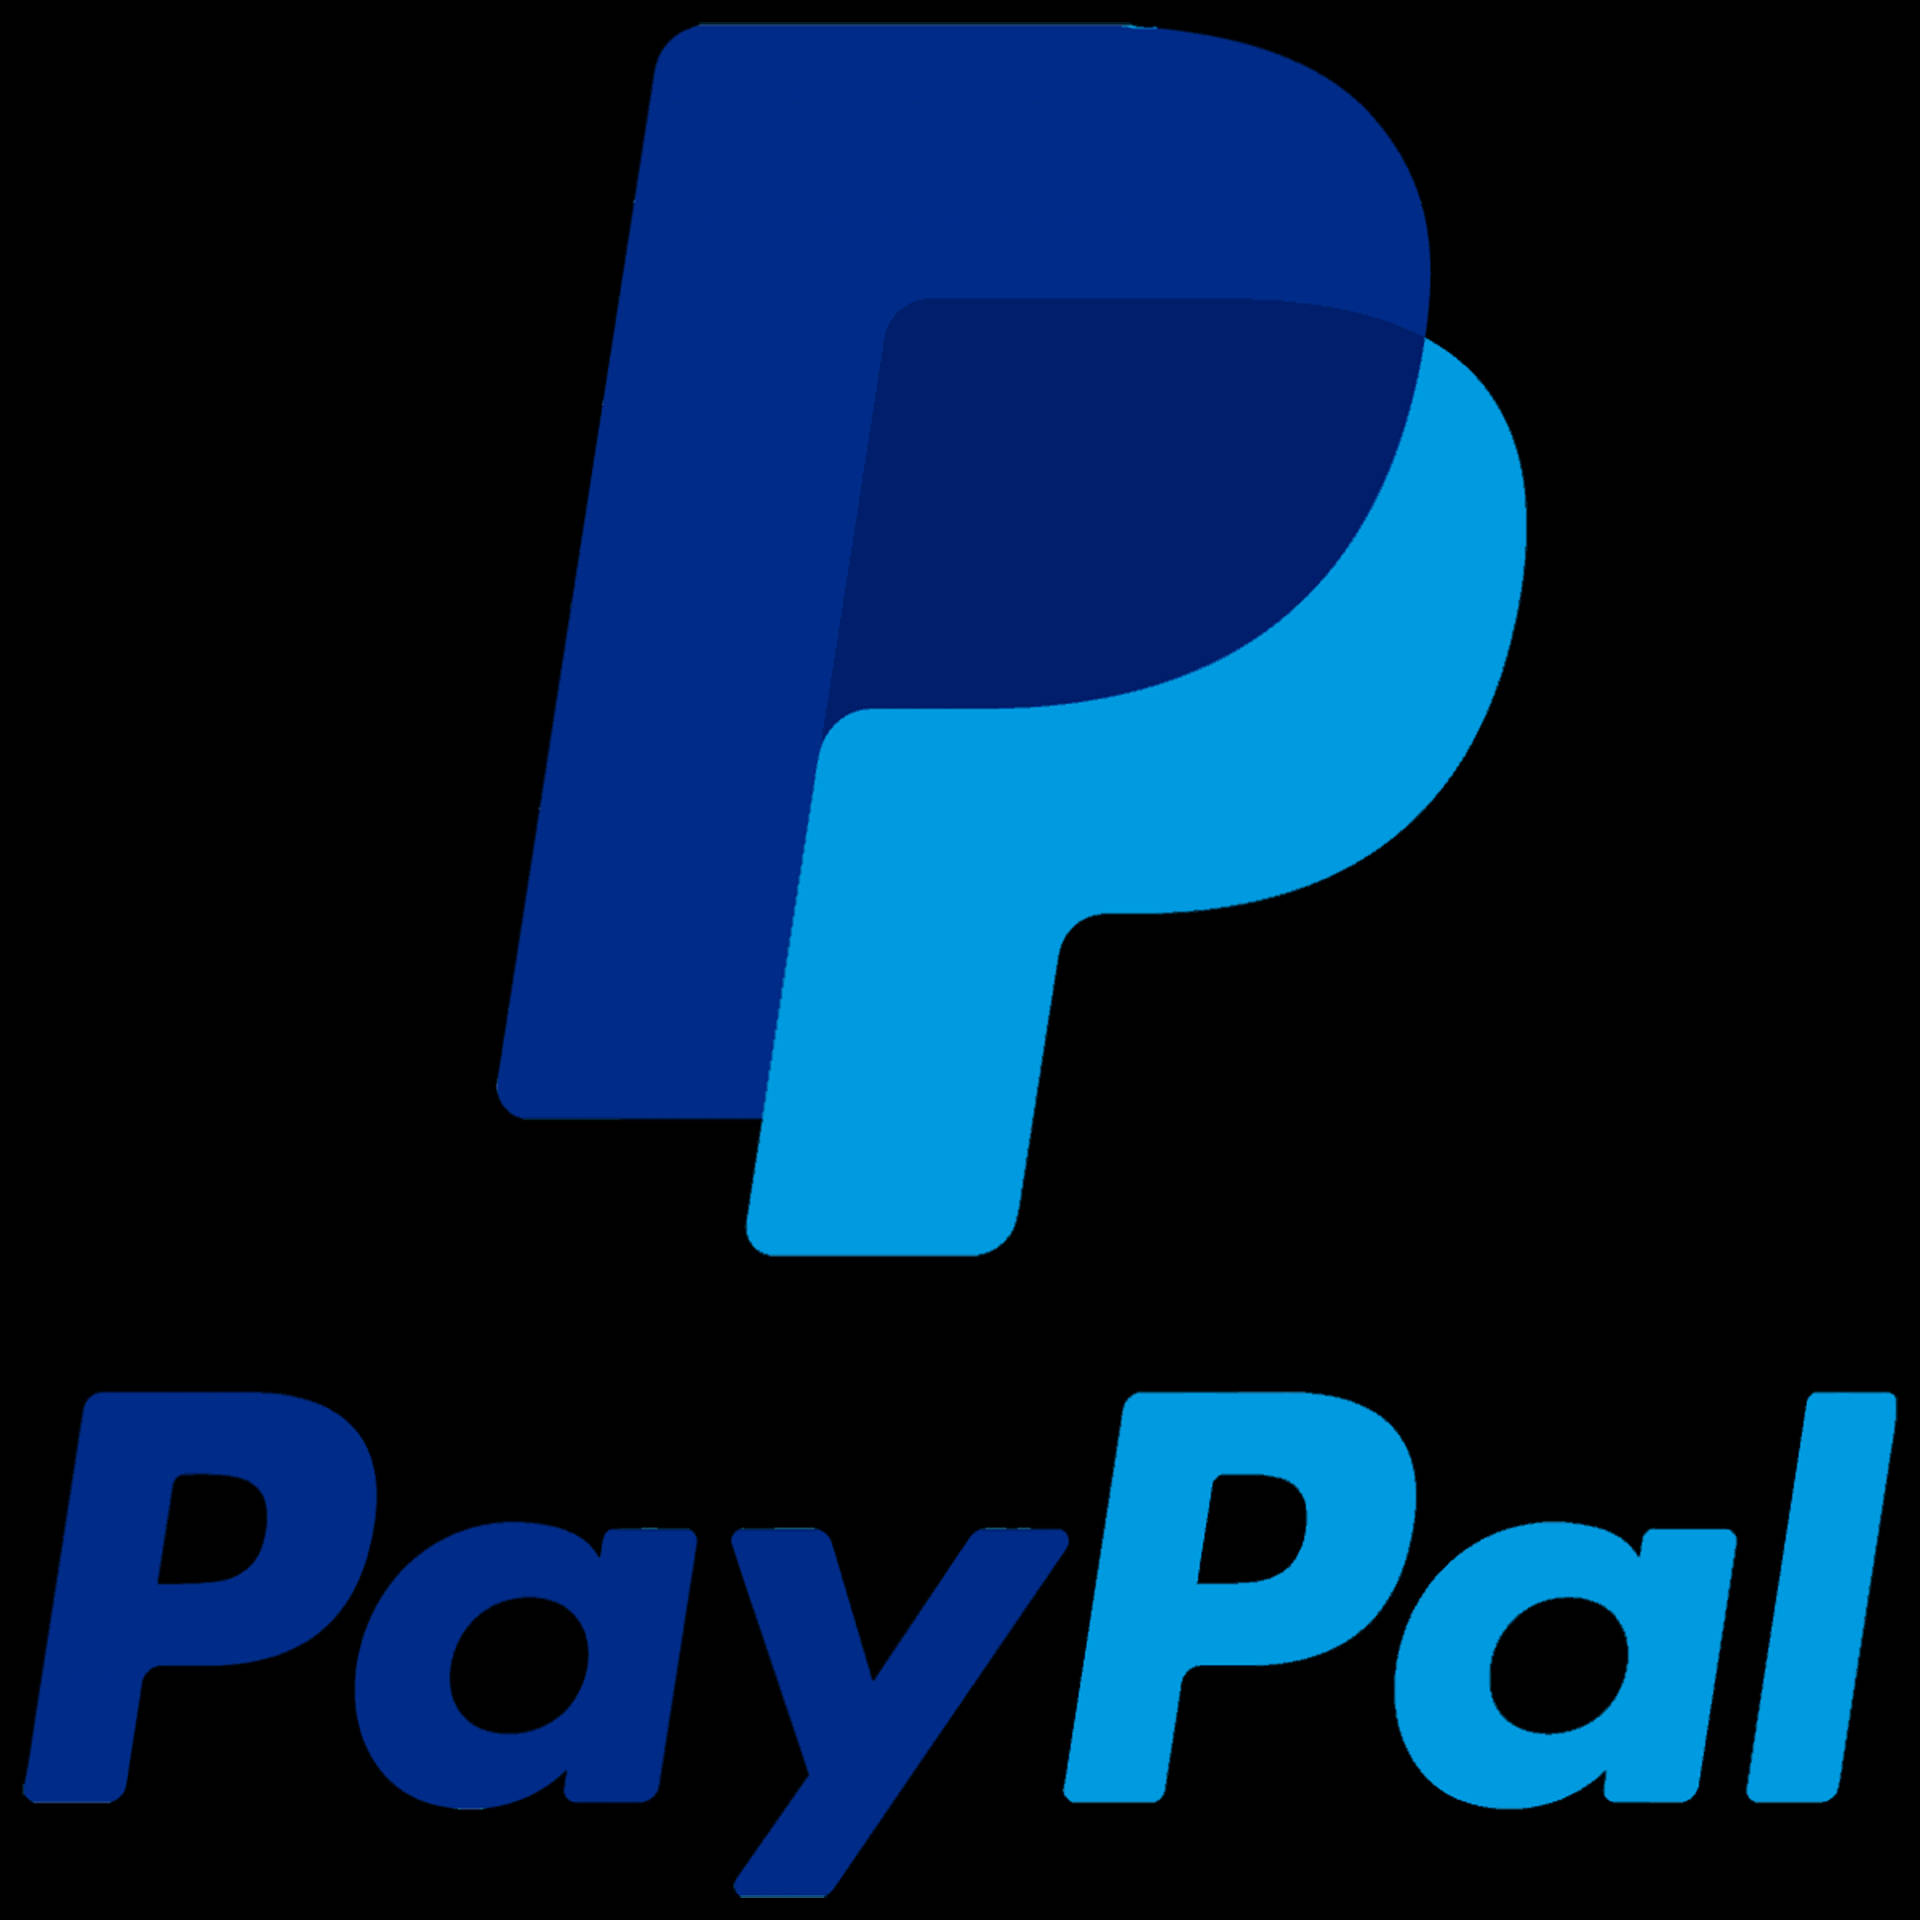 Iconic Paypal Logo Background